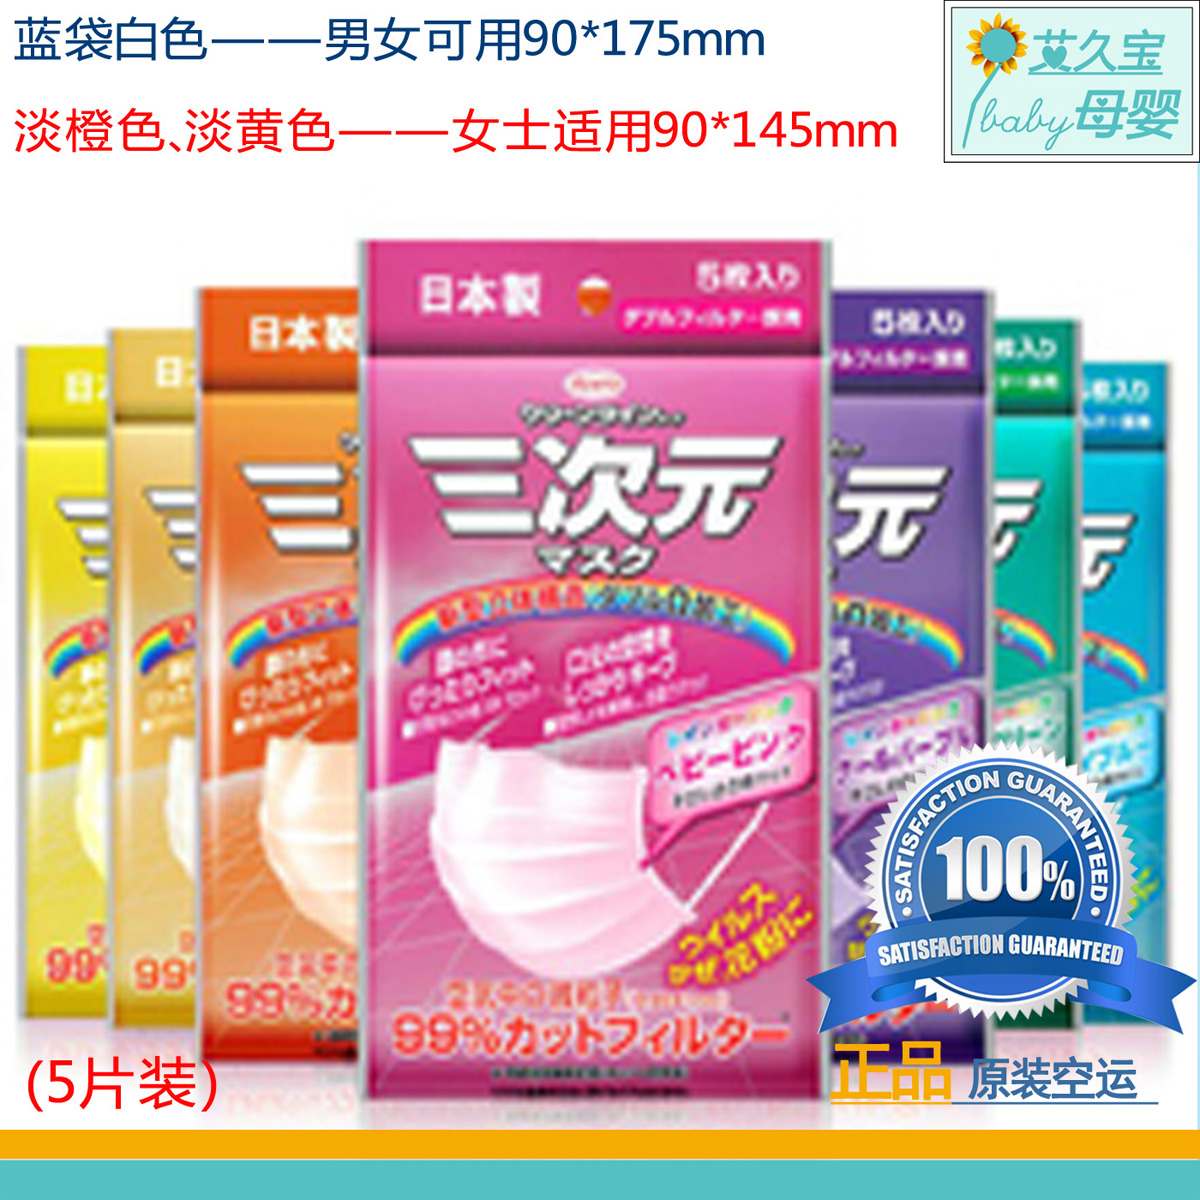 日本代购 KOWA 三次元防PM2.5口罩 抗菌防雾霾 男女款5片装